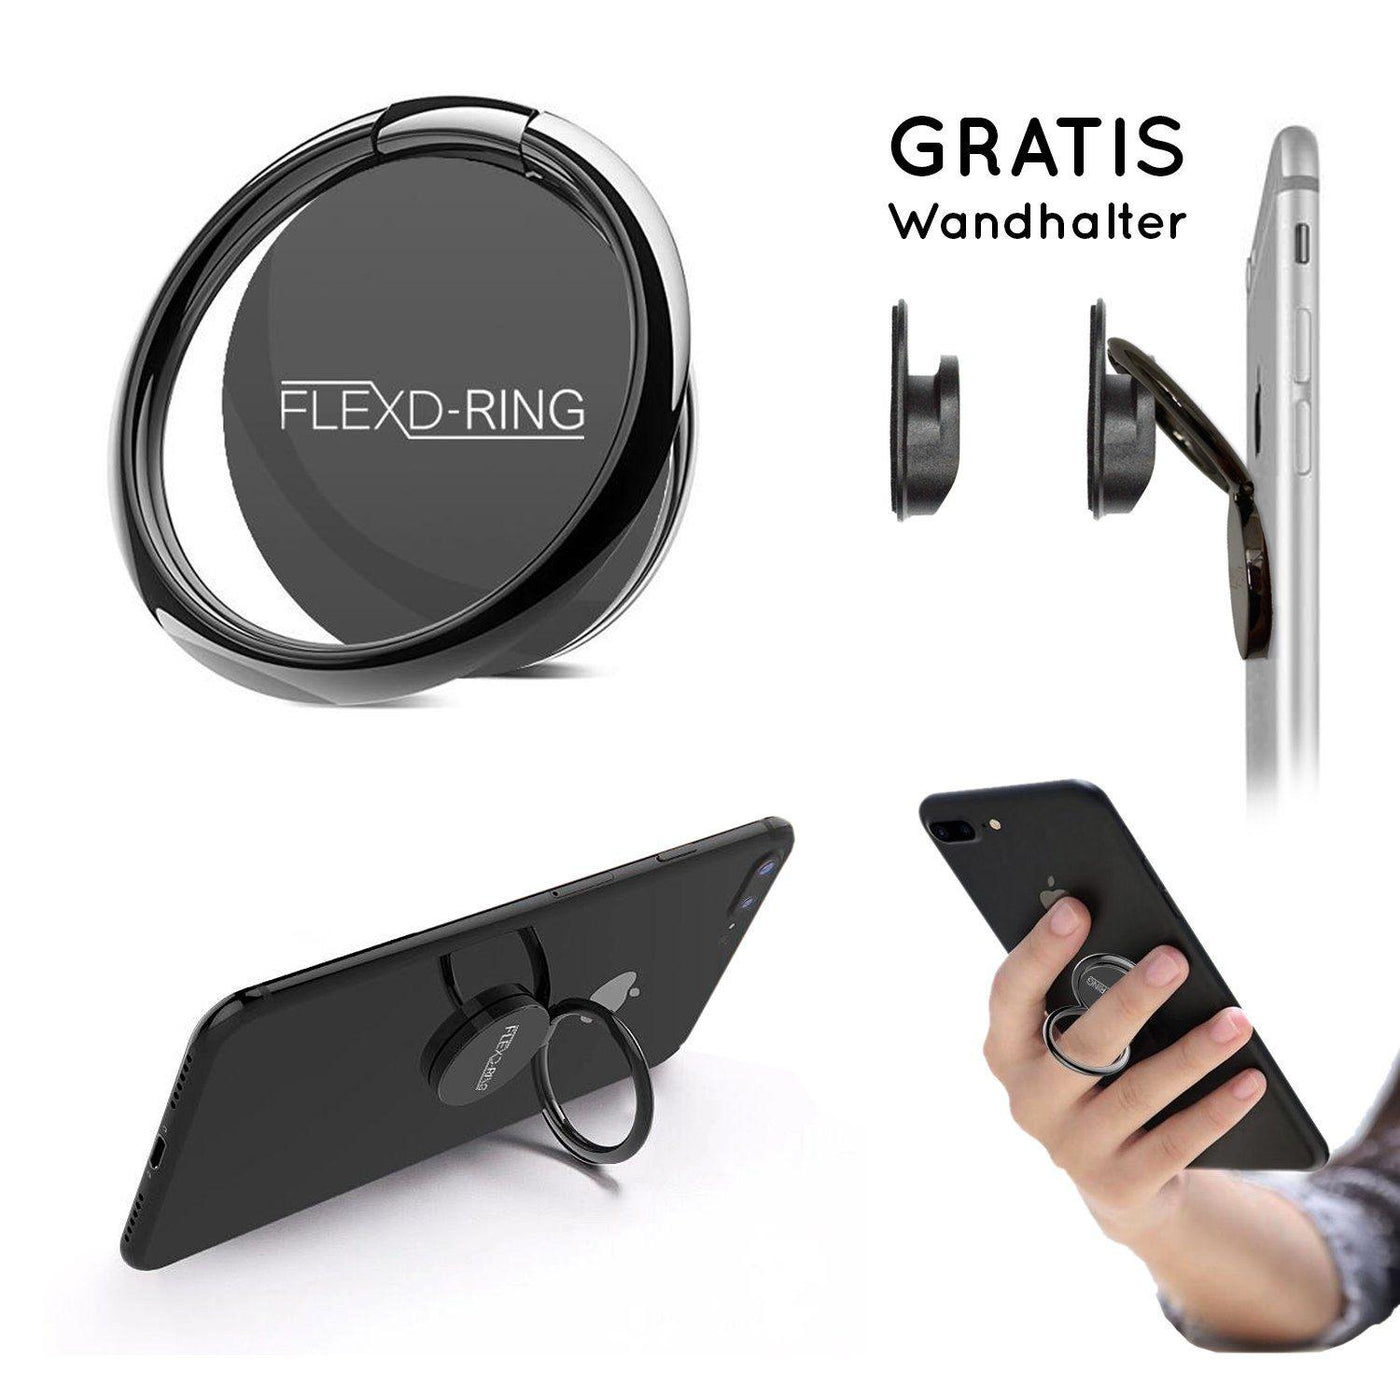 FLEXD-RING Hochwertiger Handy Fingerhalter inkl. 2x Wandhalterung Smartphone Flexd-x Schwarz 